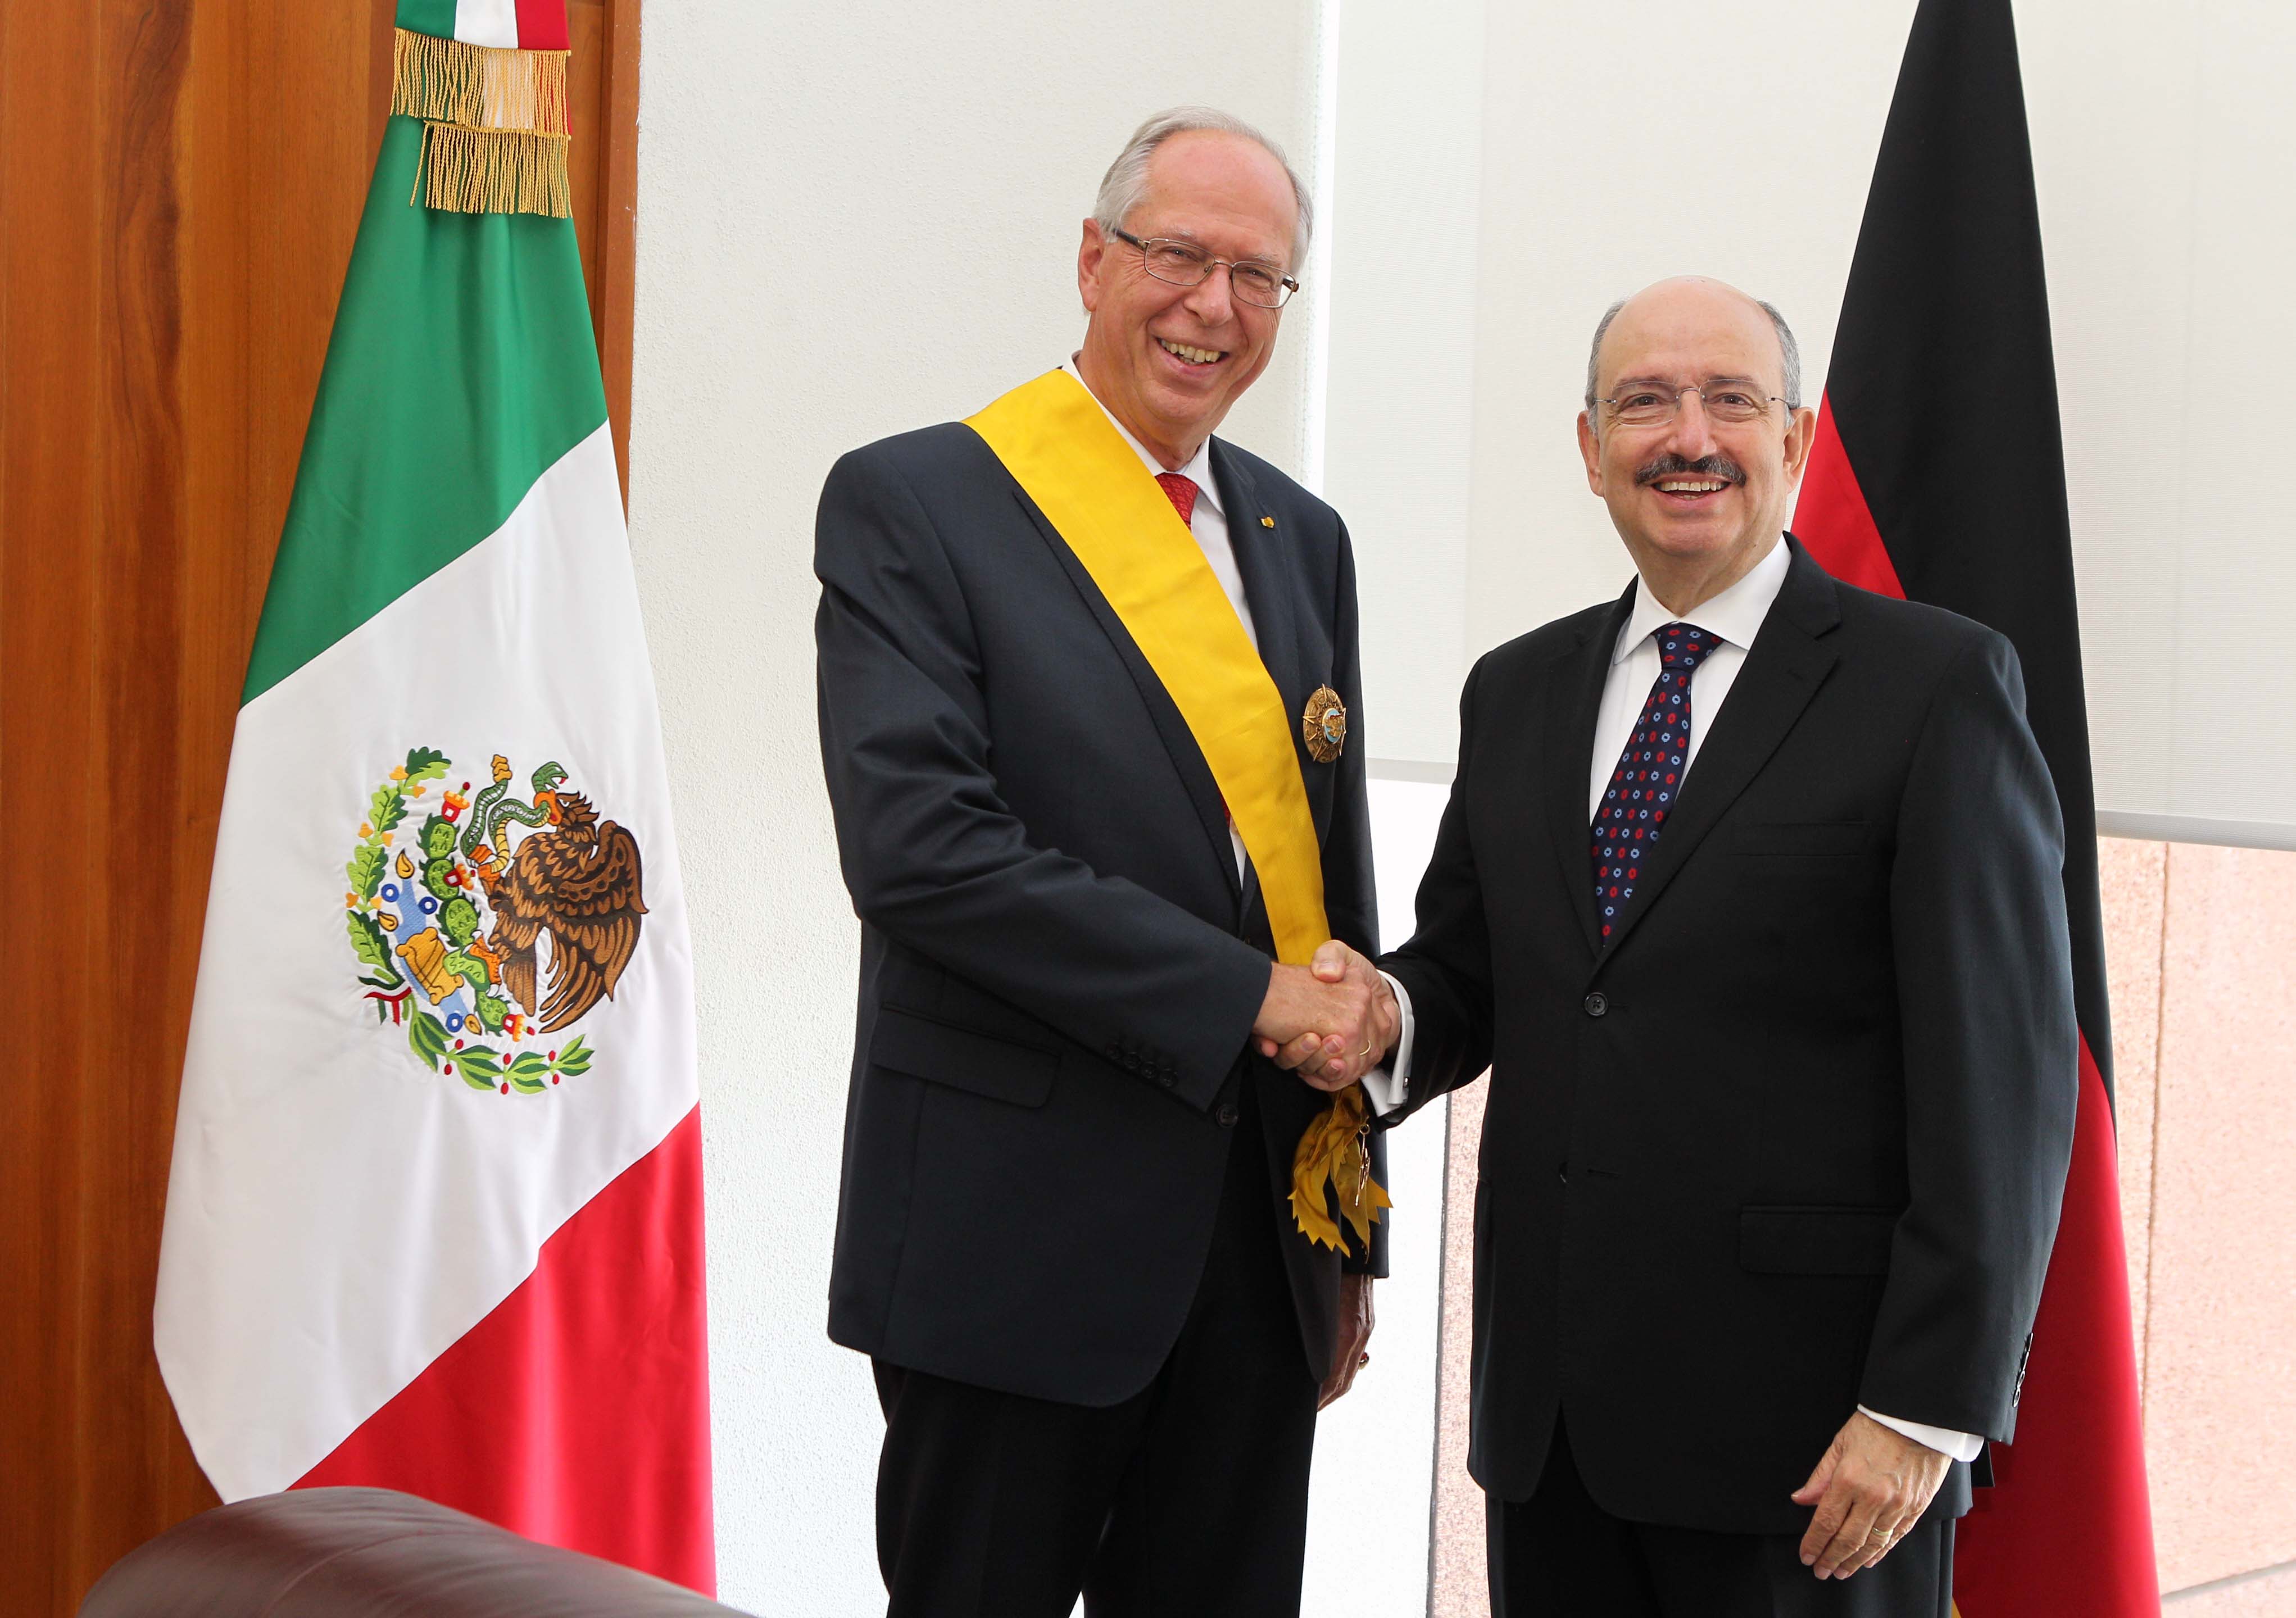 FOTO Subsecretario Carlos de Icaza con el ex Embajador de la Rep blica Federal de Alemania en nuestro pa s  Edmund Duckwitz.jpg